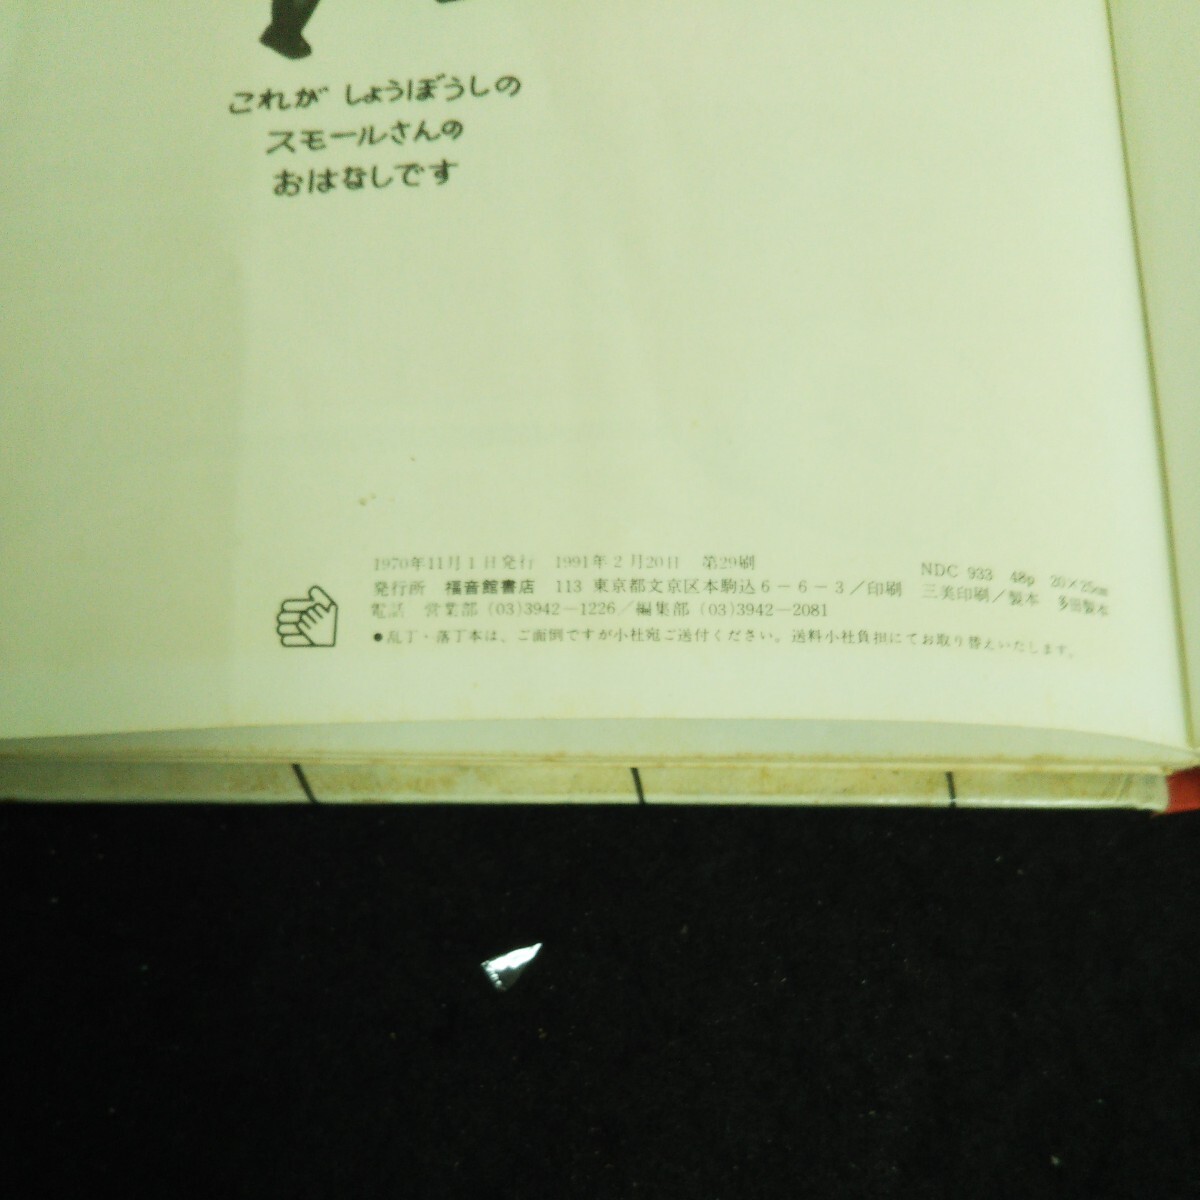 b-233 ちいさいしょうぼうじどうしゃ 株式会社福音館書店 1970年発行※14_画像4